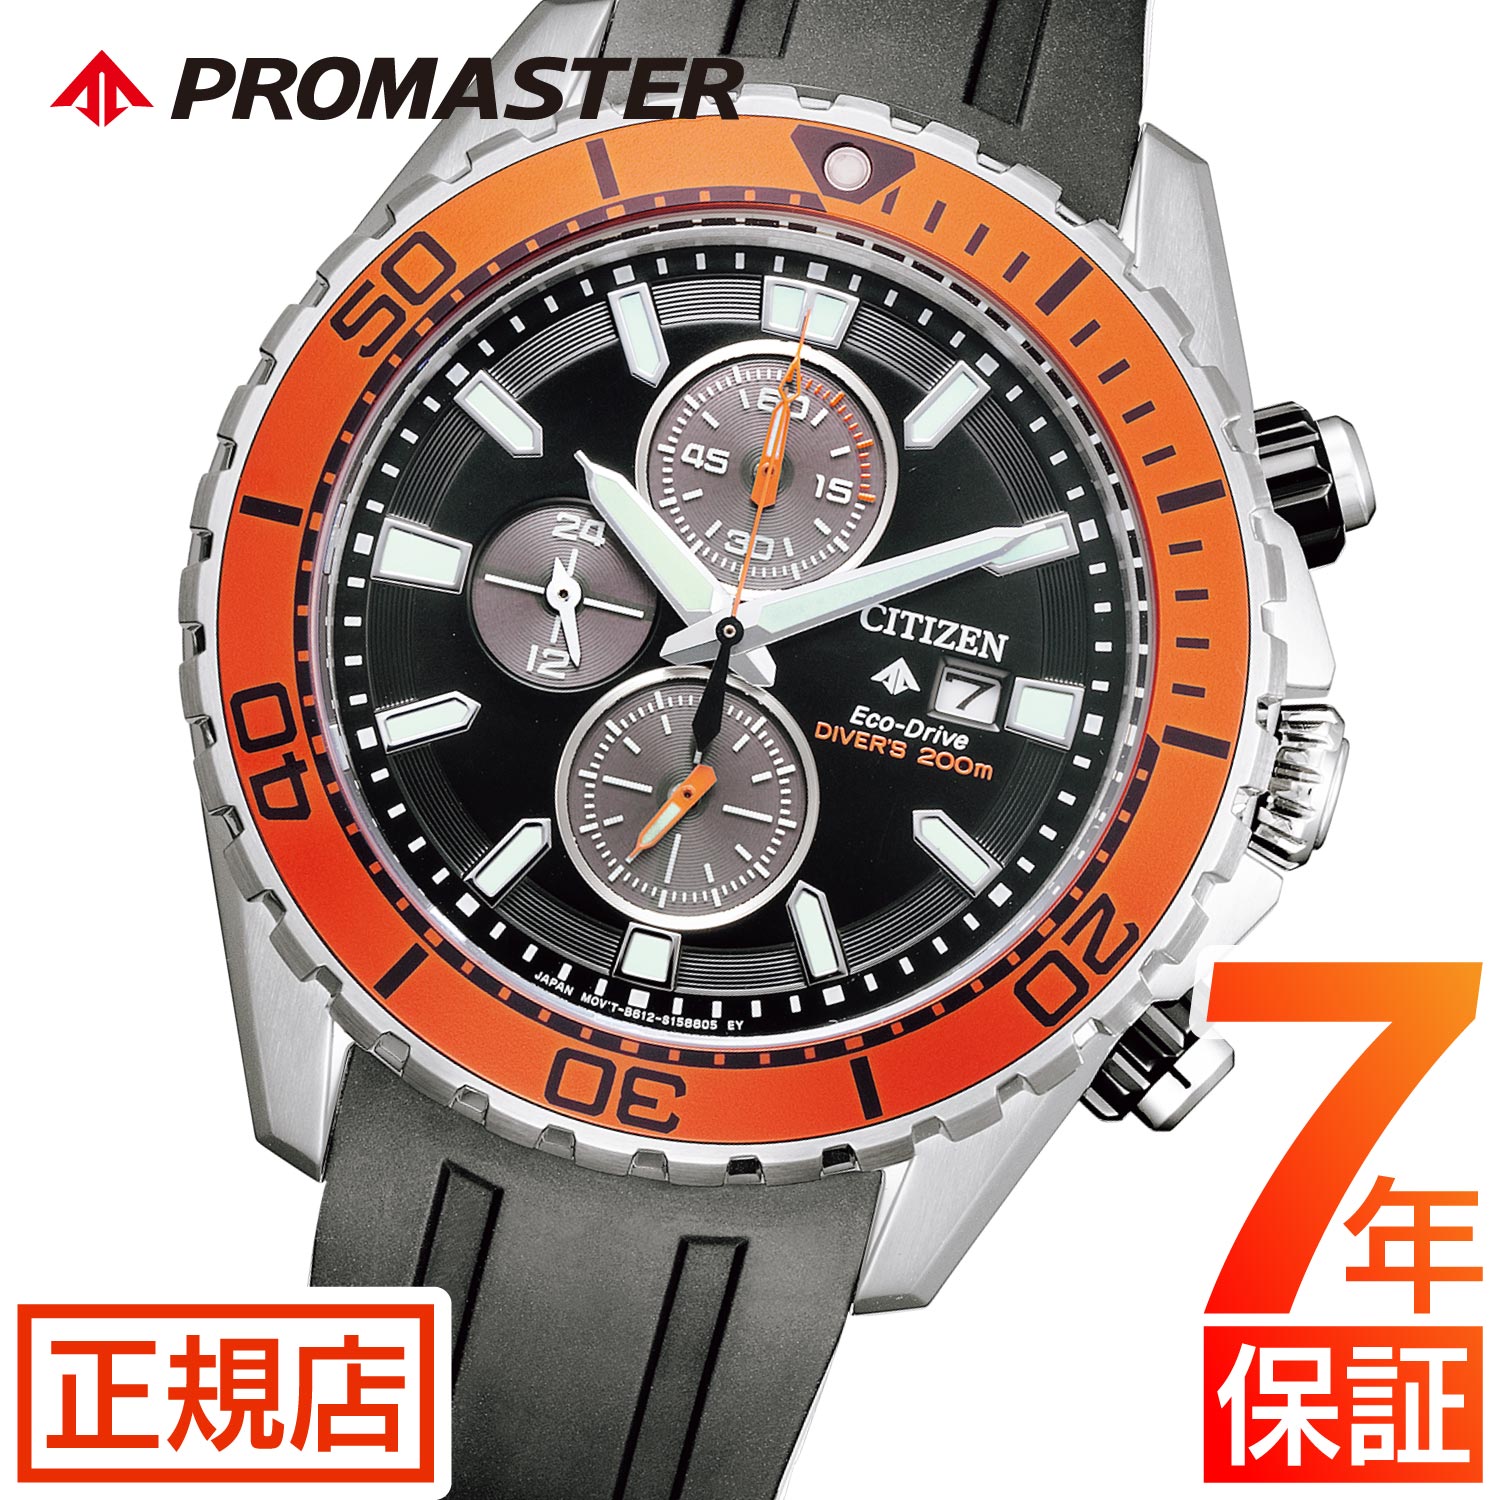 シチズン プロマスター ダイバーズウオッチ 腕時計 メンズ CITIZEN PROMASTER CA0718-21E シチズン エコドライブ  マリーンシリーズ クロノグラフ :pr-ca0718-21e:東京ウォッチスタイル - 通販 - Yahoo!ショッピング